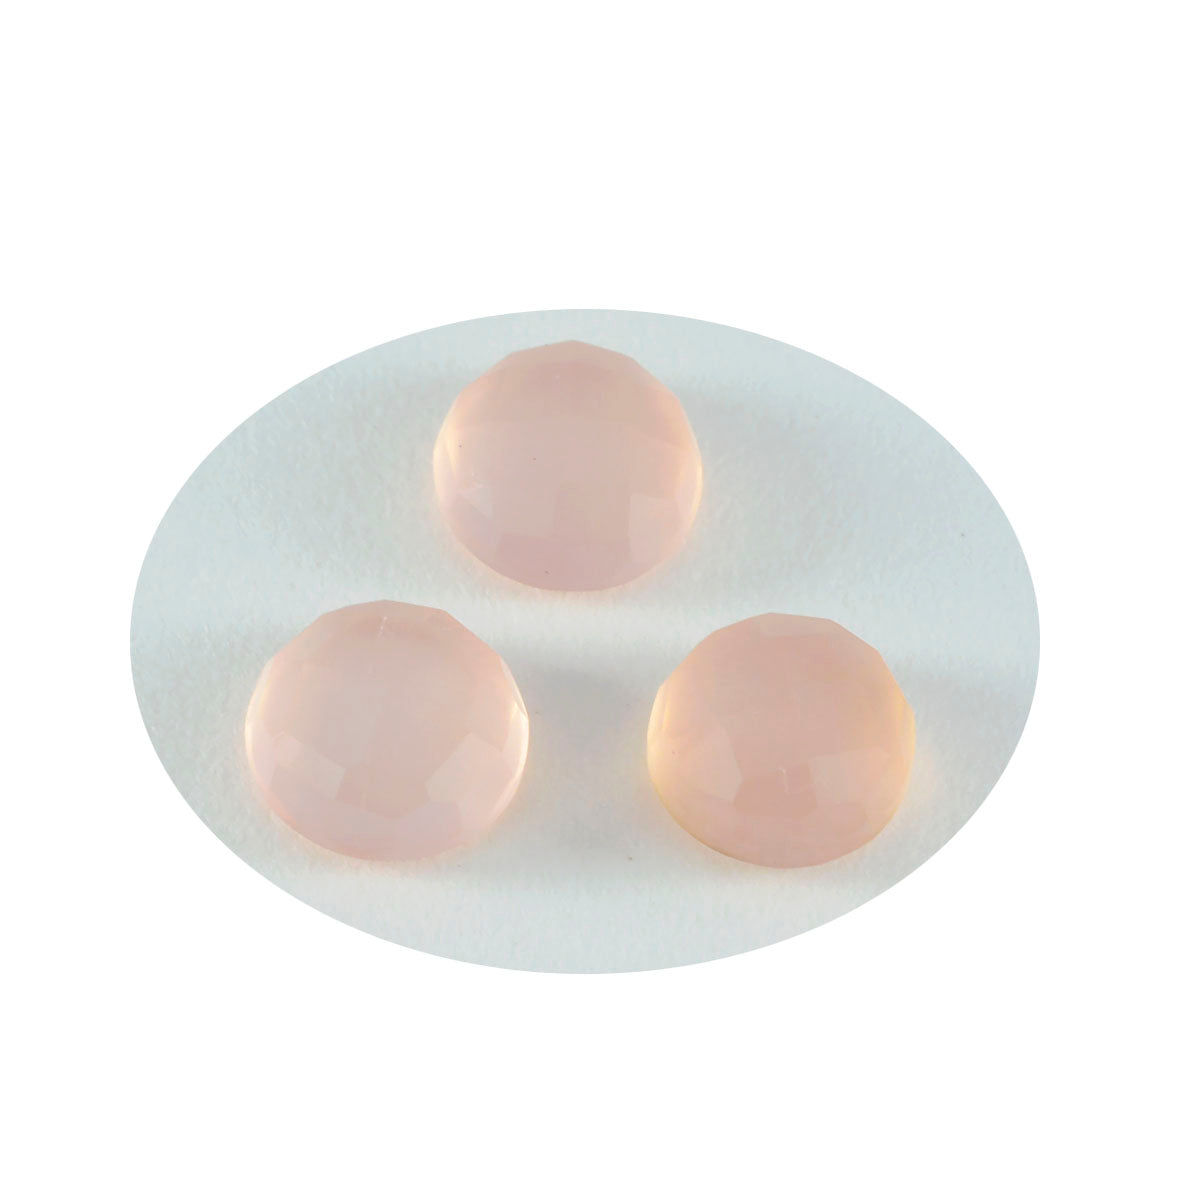 riyogems 1pc ピンク ローズ クォーツ ファセット 15x15 mm ラウンド形状の優れた品質のルース宝石